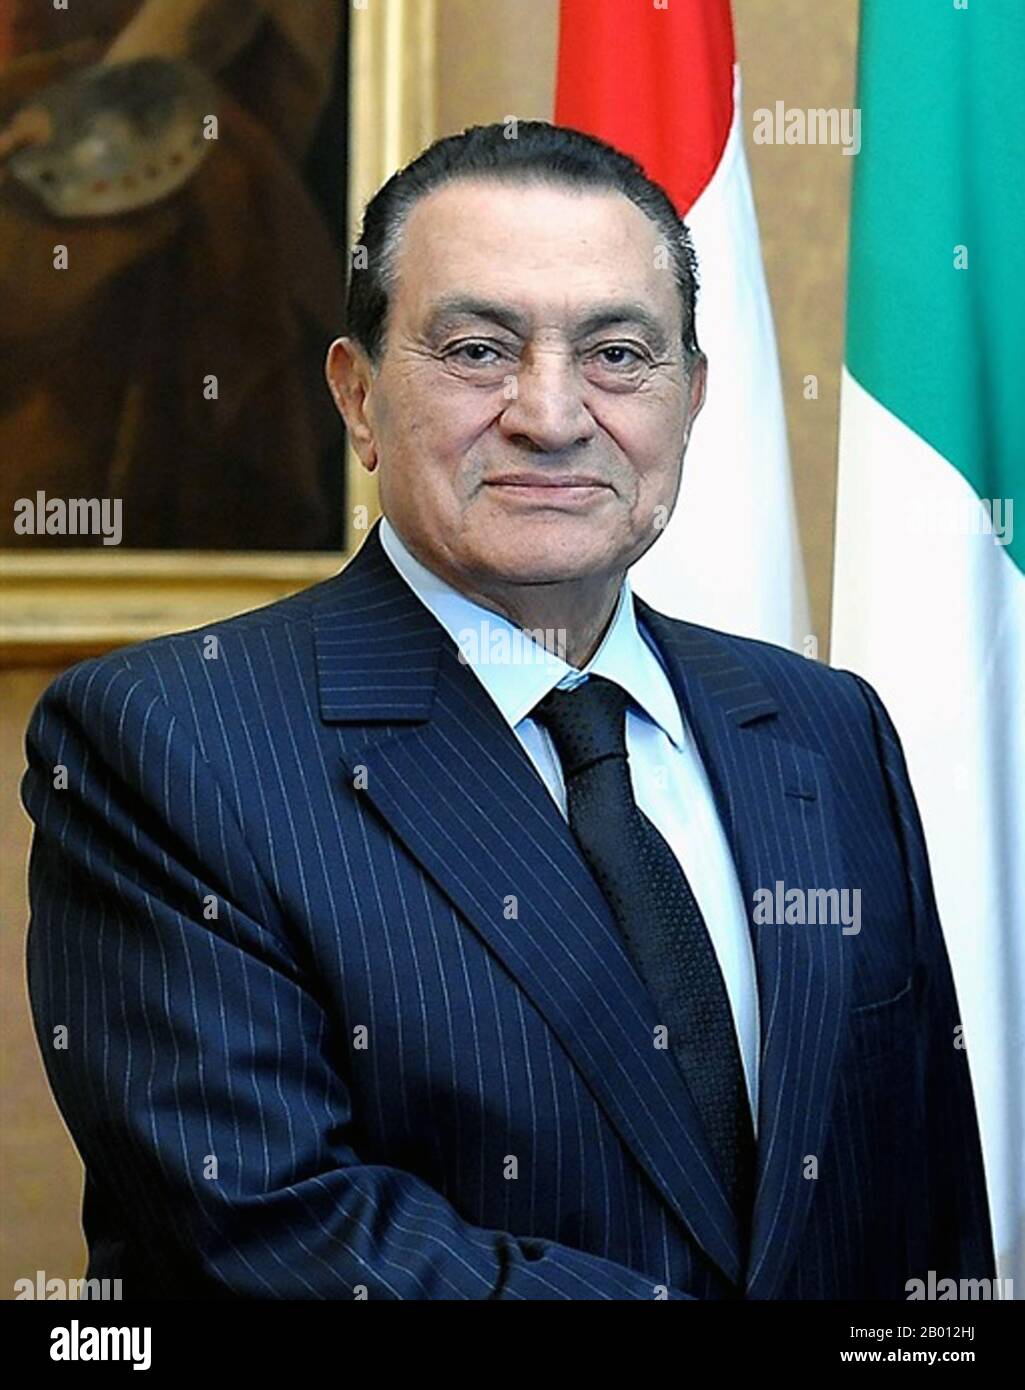 Égypte : Muhammad Hosni Sayyid Mubarak (né le 4 mai 1928), Président de l'Égypte, de 1981 à 2011. Photo de Presidenza della Repubblica (attribution), 2009. Muhammad Hosni Sayyid Mubarak (né le 4 mai 1928), Président de l'Égypte, de 1981 à 2011. Moubarak a été nommé vice-président de l'Égypte en 1975 et a pris la présidence le 14 octobre 1981, à la suite de l'assassinat du président Anwar El Sadat. La durée de sa présidence en a fait le plus ancien dirigeant de l'Égypte depuis Muhammad Ali Pasha. Avant son entrée en politique, Moubarak était un officier de carrière dans l'armée de l'air égyptienne. Banque D'Images